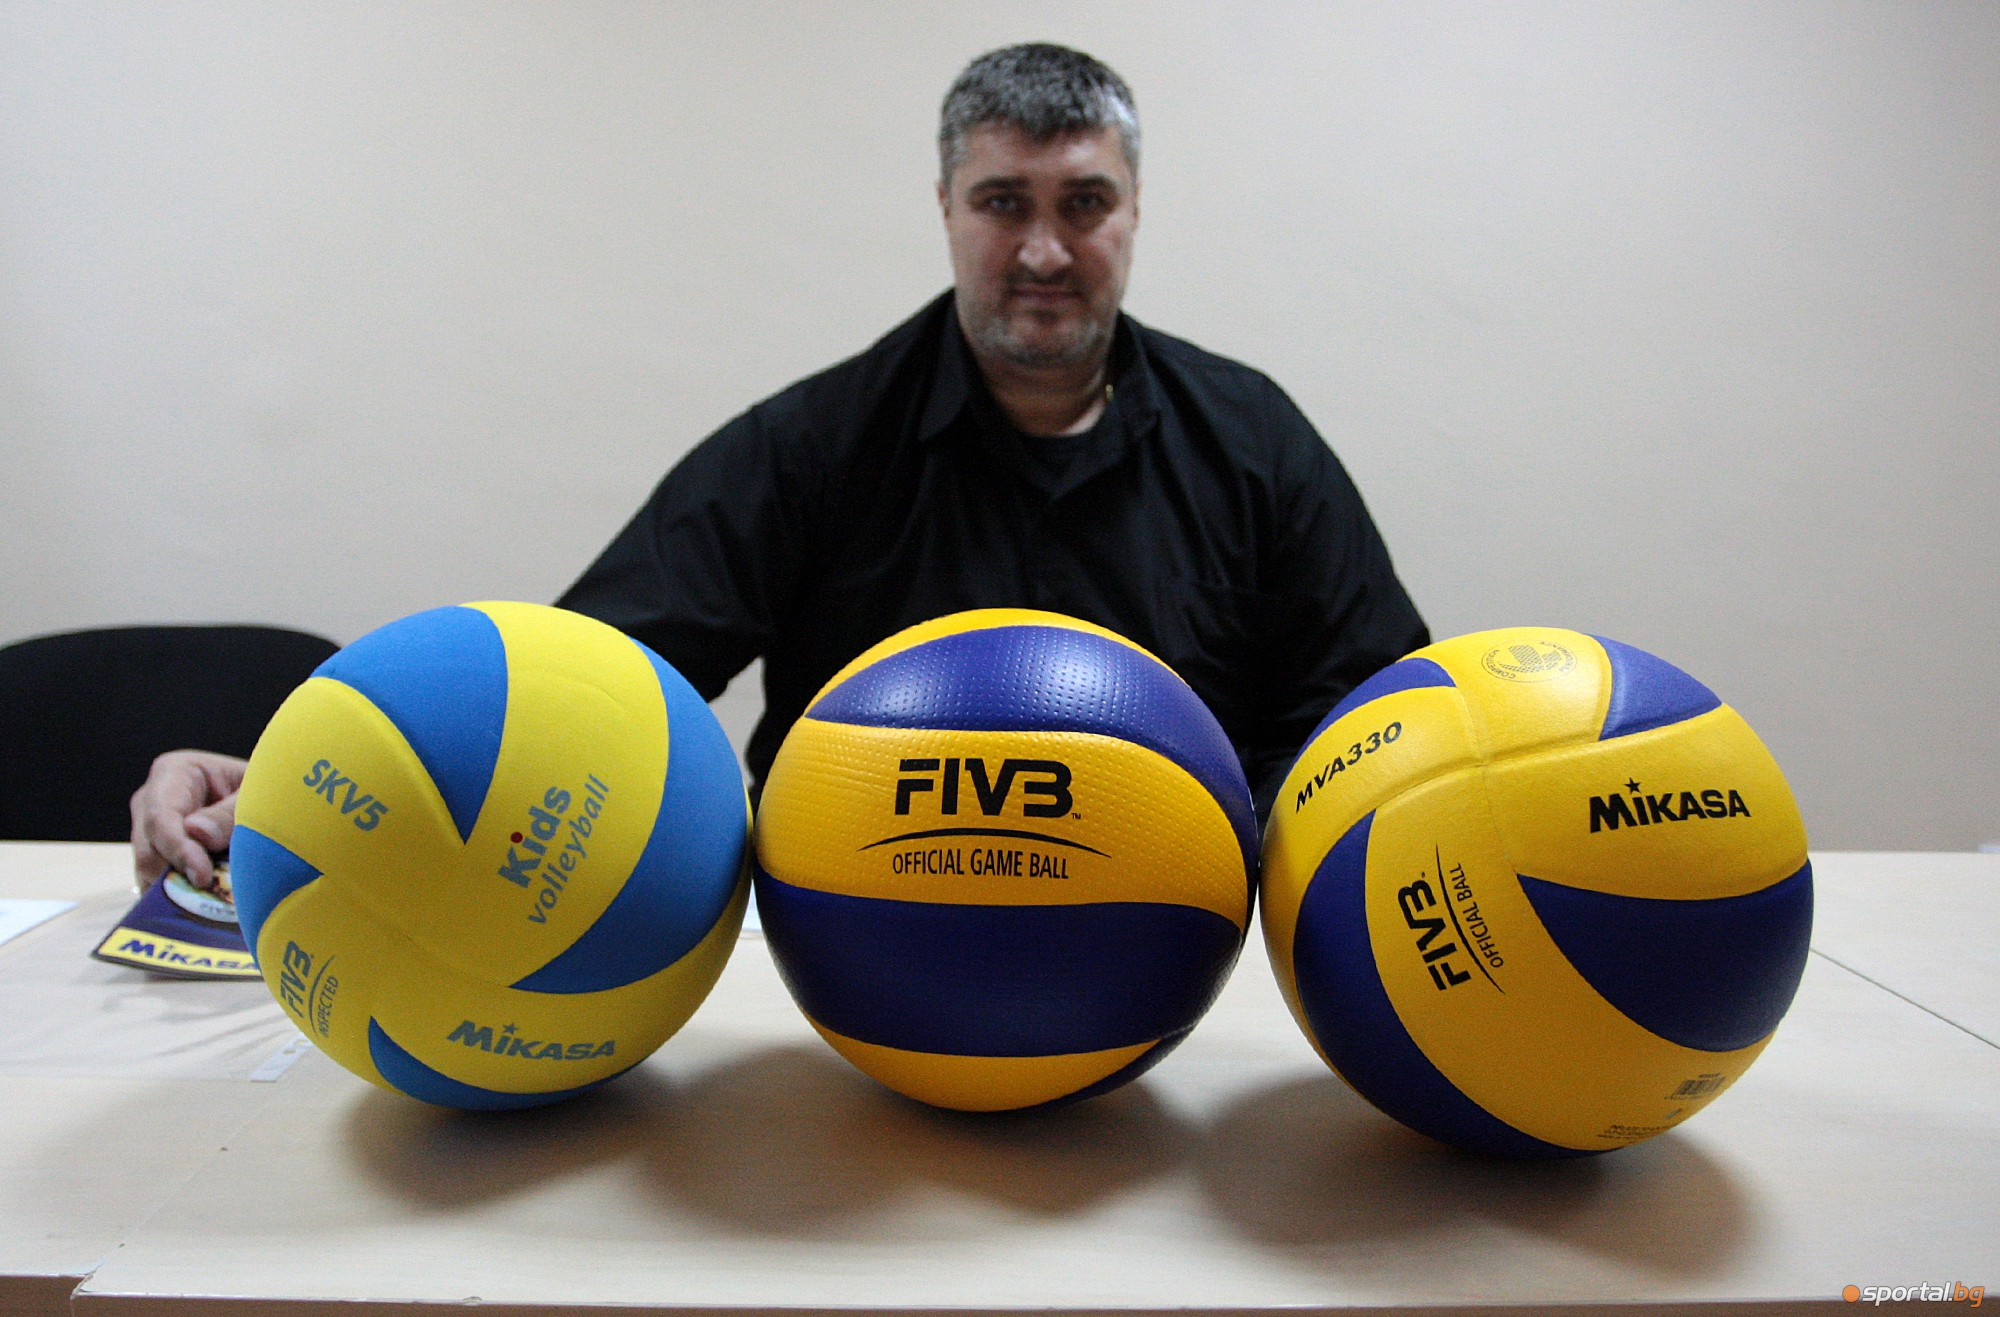  Управителният съвет на БФ Волейбол организира над 4 часова среща през днешния ден в София 